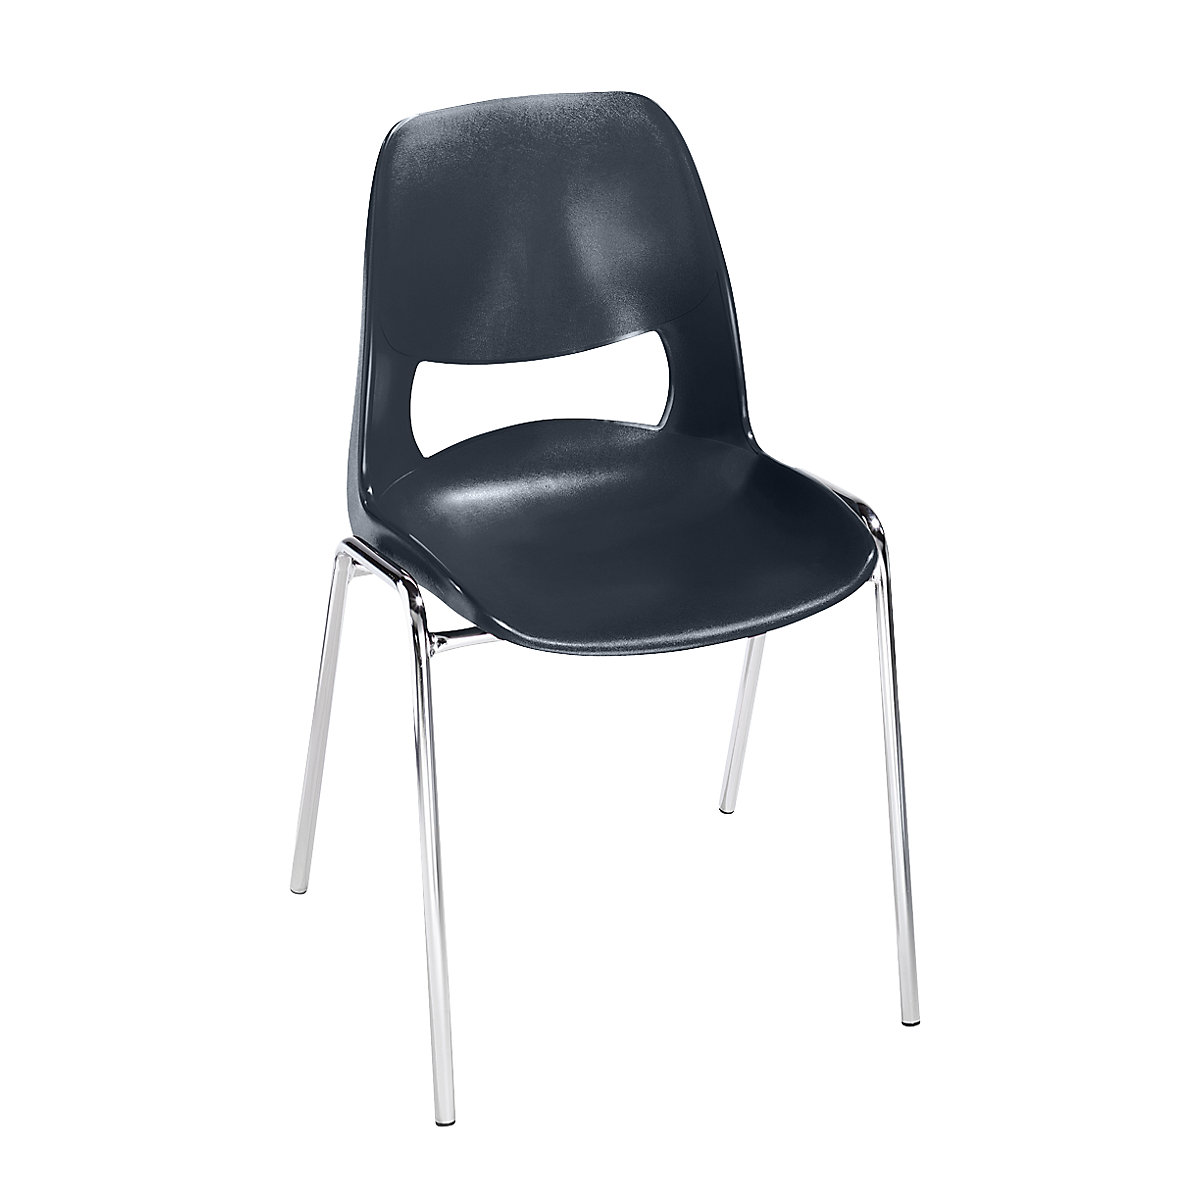 Krzesło z siedziskiem z polipropylenu